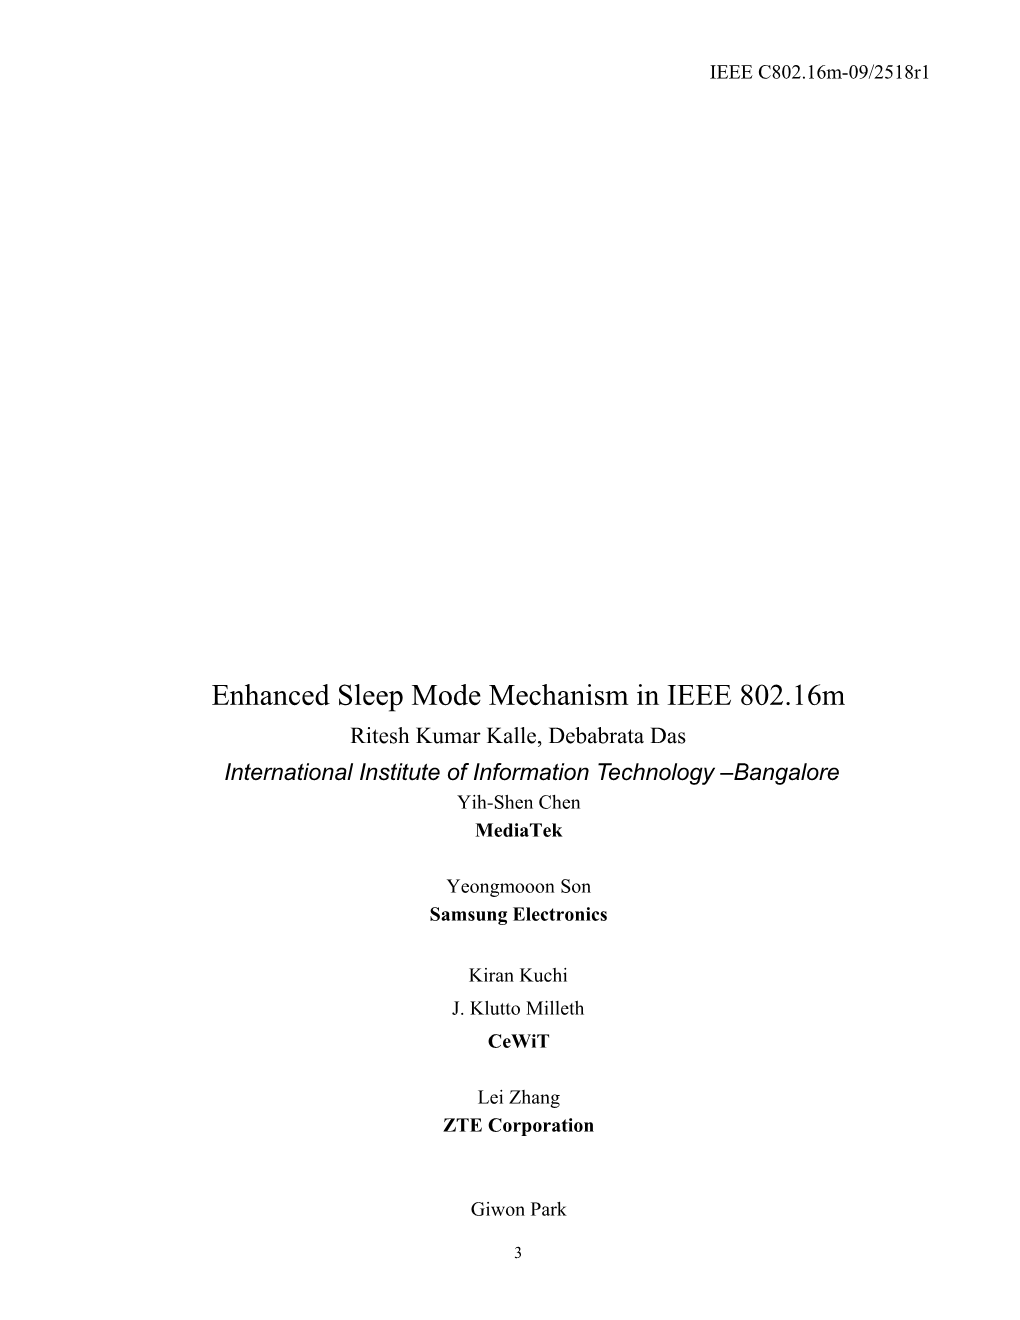 Enhanced Sleep Mode Mechanism in IEEE 802.16M